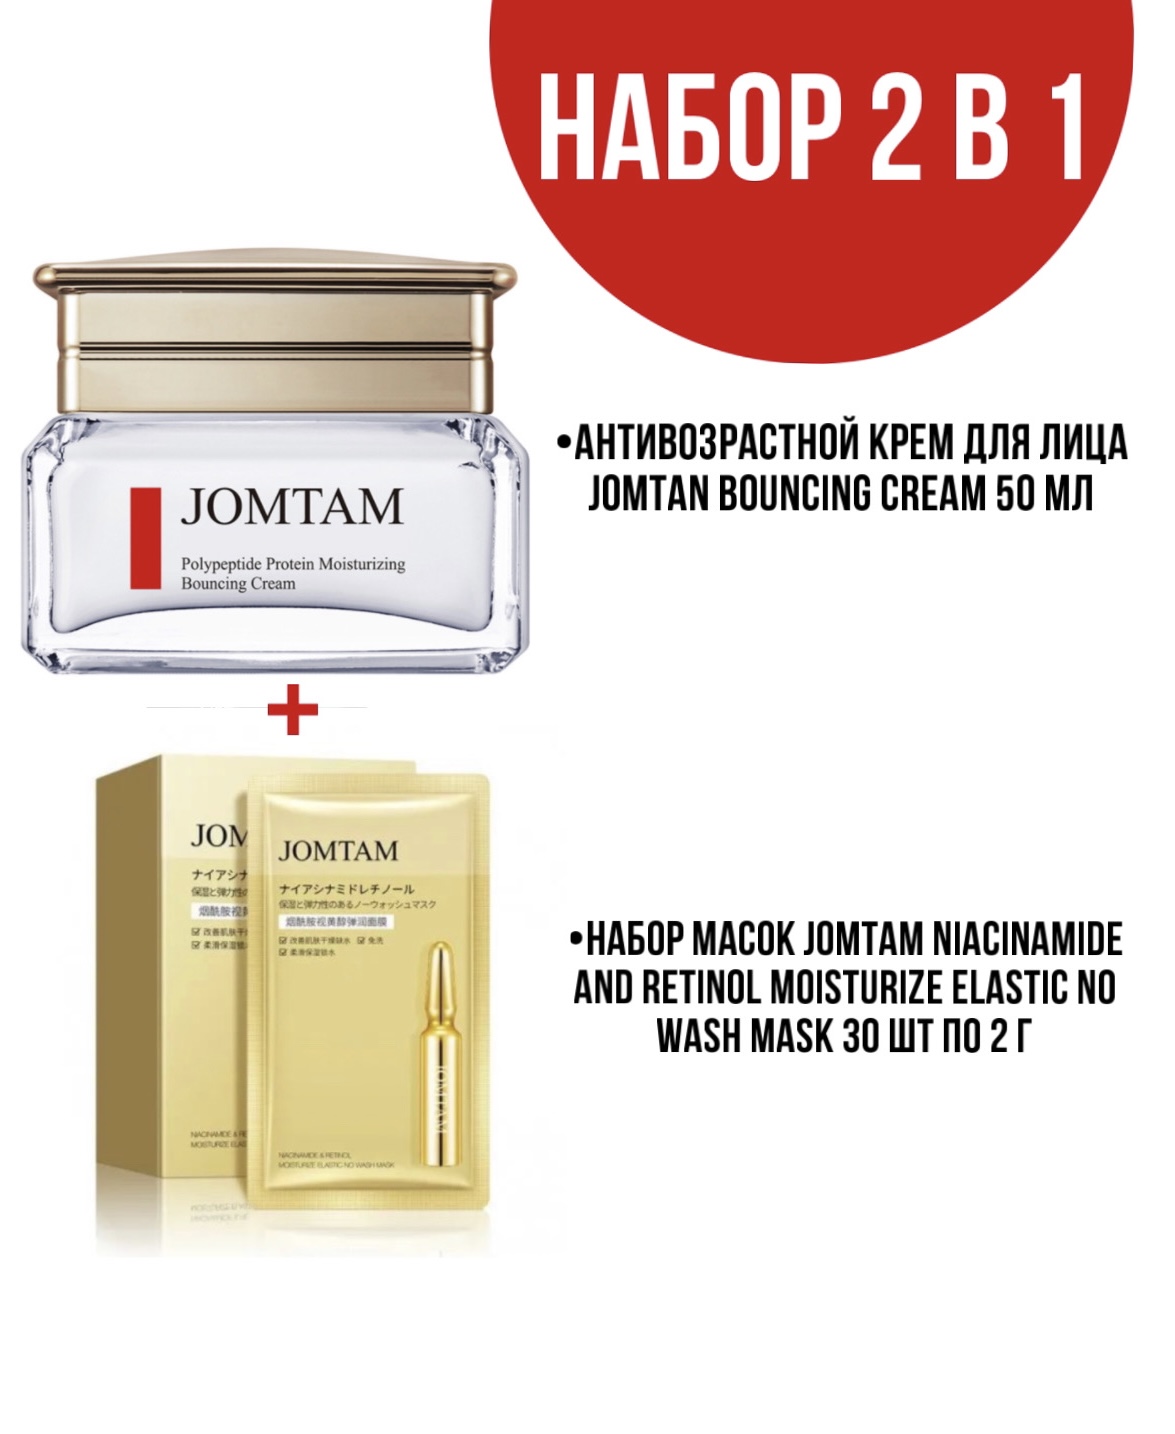 Крем Jomtam Bouncing Cream для лица 50 мл и набор масок Jomtam Niacinamide 30 шт по 2 г joypretty полипептидный крем для глаз с несколькими эффектами 20 г